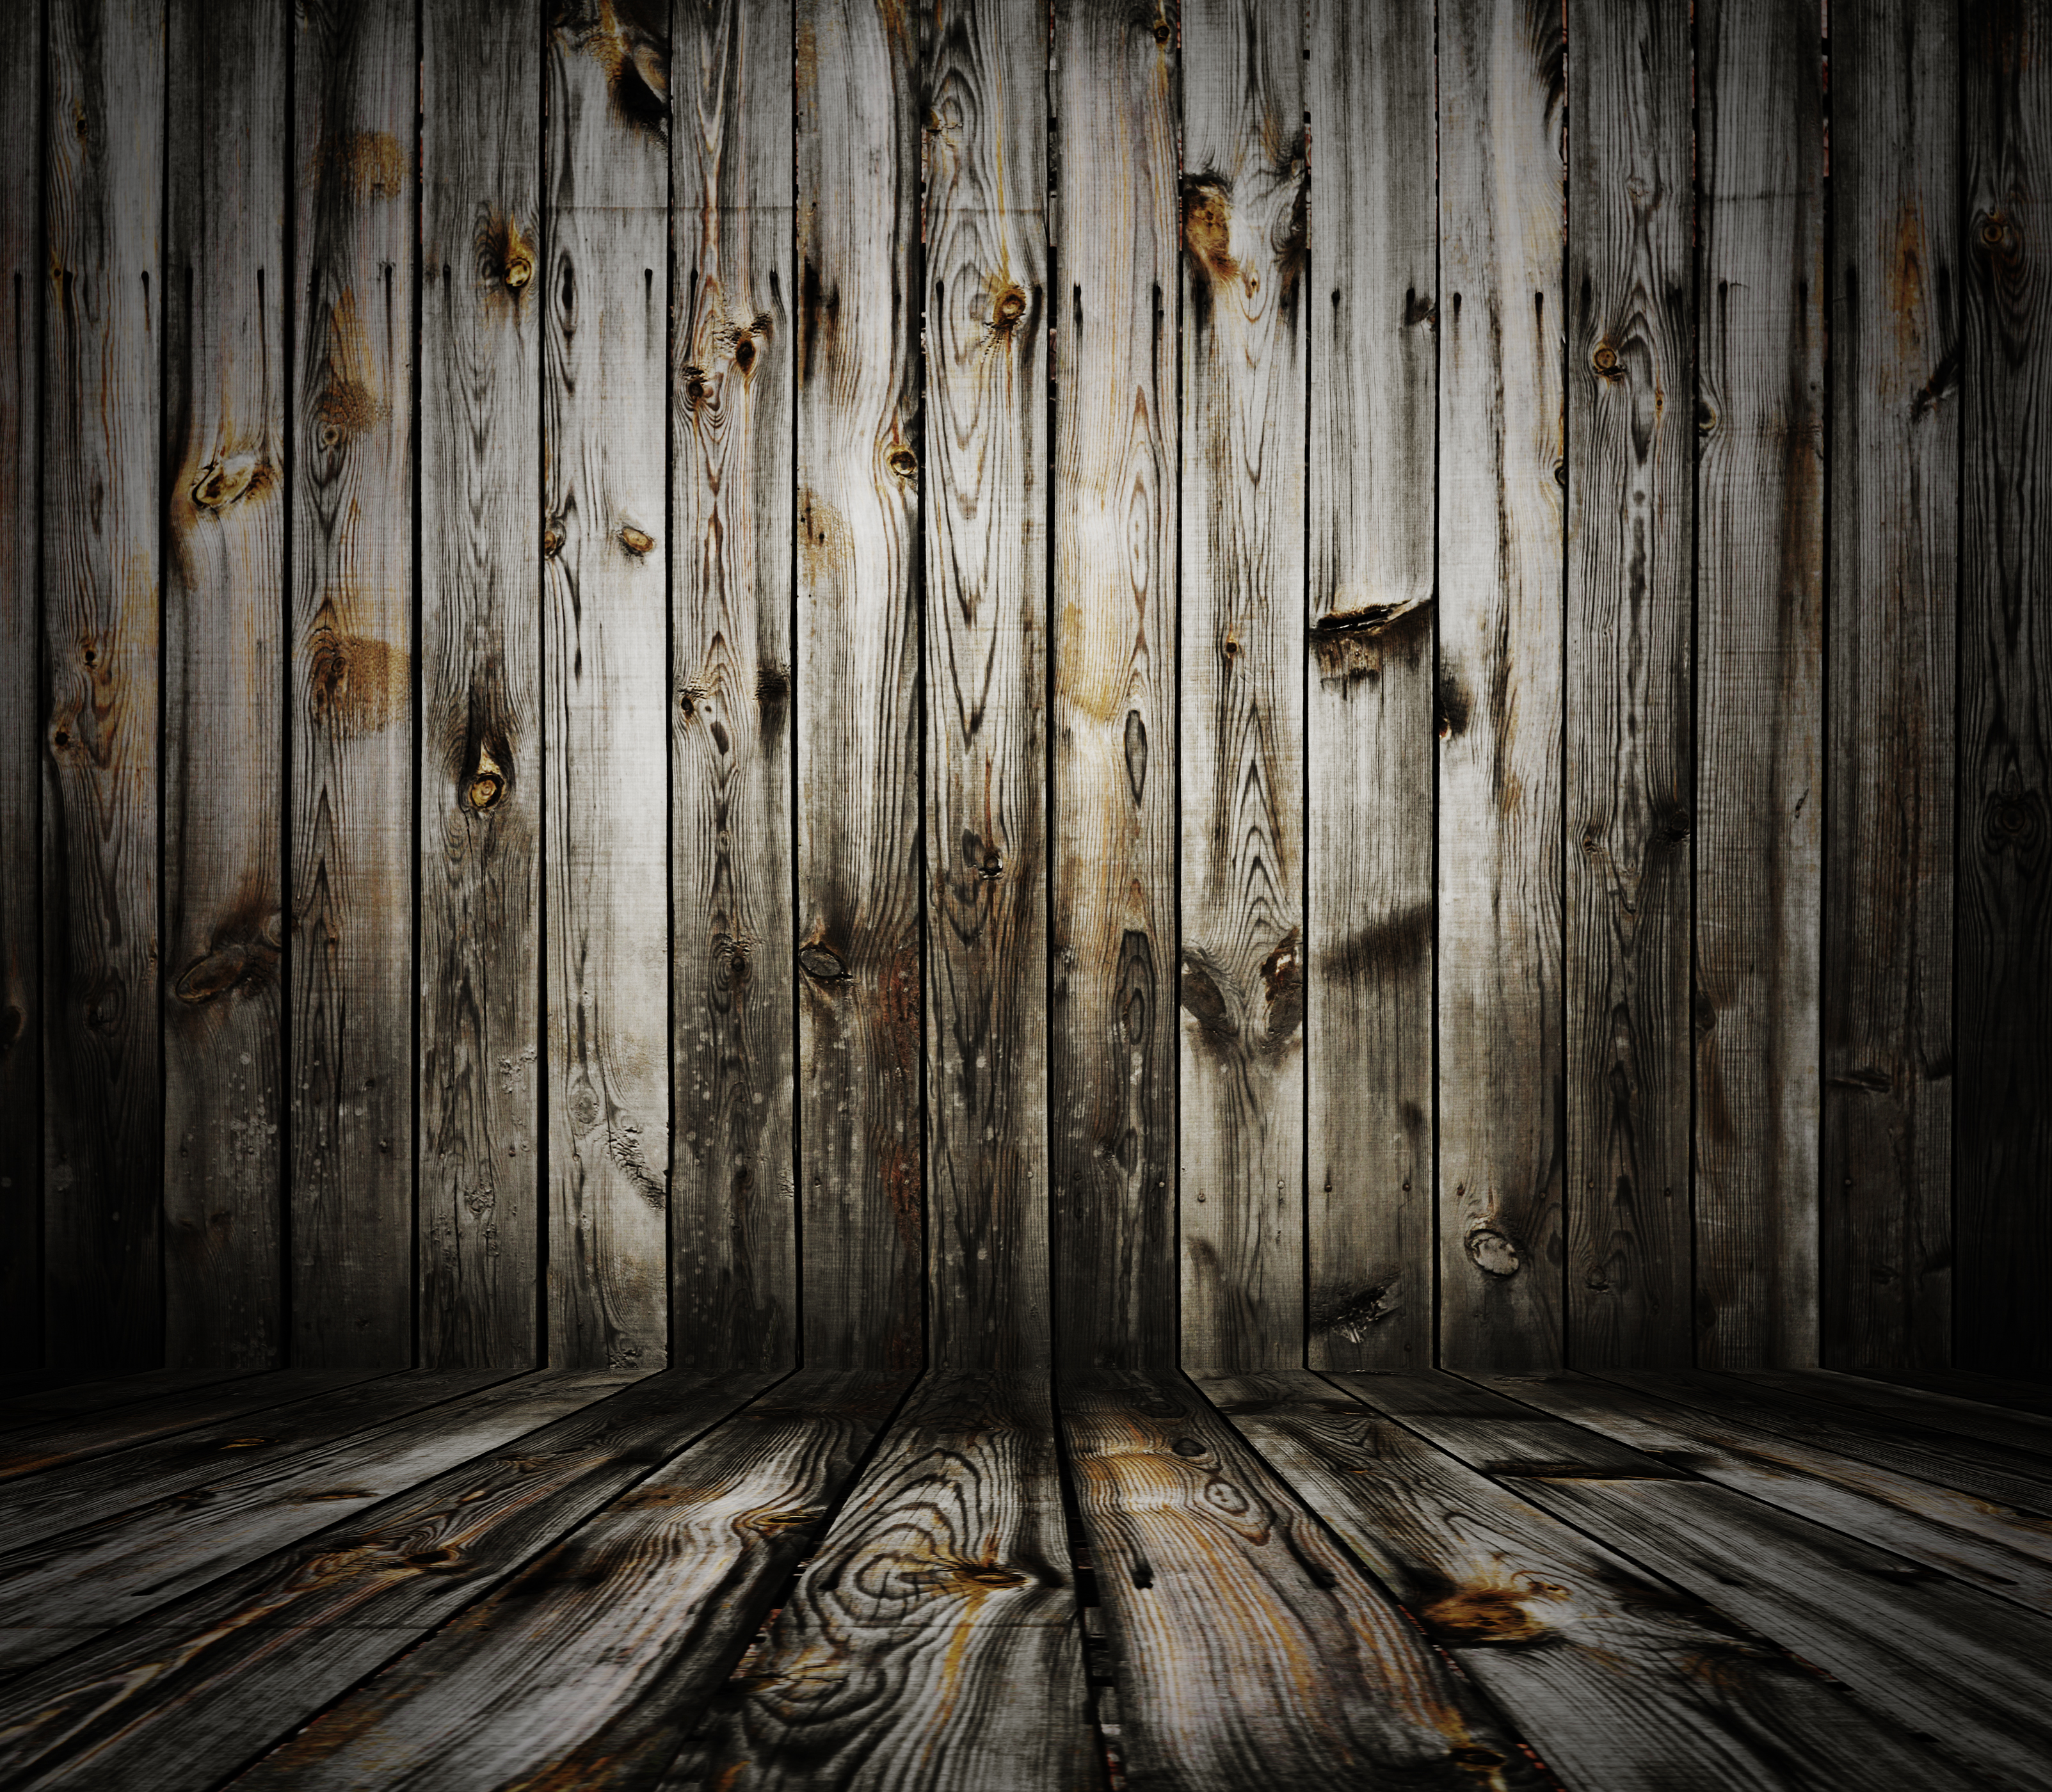 Nền gỗ Rustic với các vân gỗ tự nhiên và màu sắc ấn tượng sẽ đem lại sự ấm cúng và gần gũi cho căn phòng của bạn. Hình ảnh liên quan sẽ giúp bạn hiểu rõ hơn về cách sử dụng Rustic Wood Background để tạo ra một không gian đẹp và thư giãn.